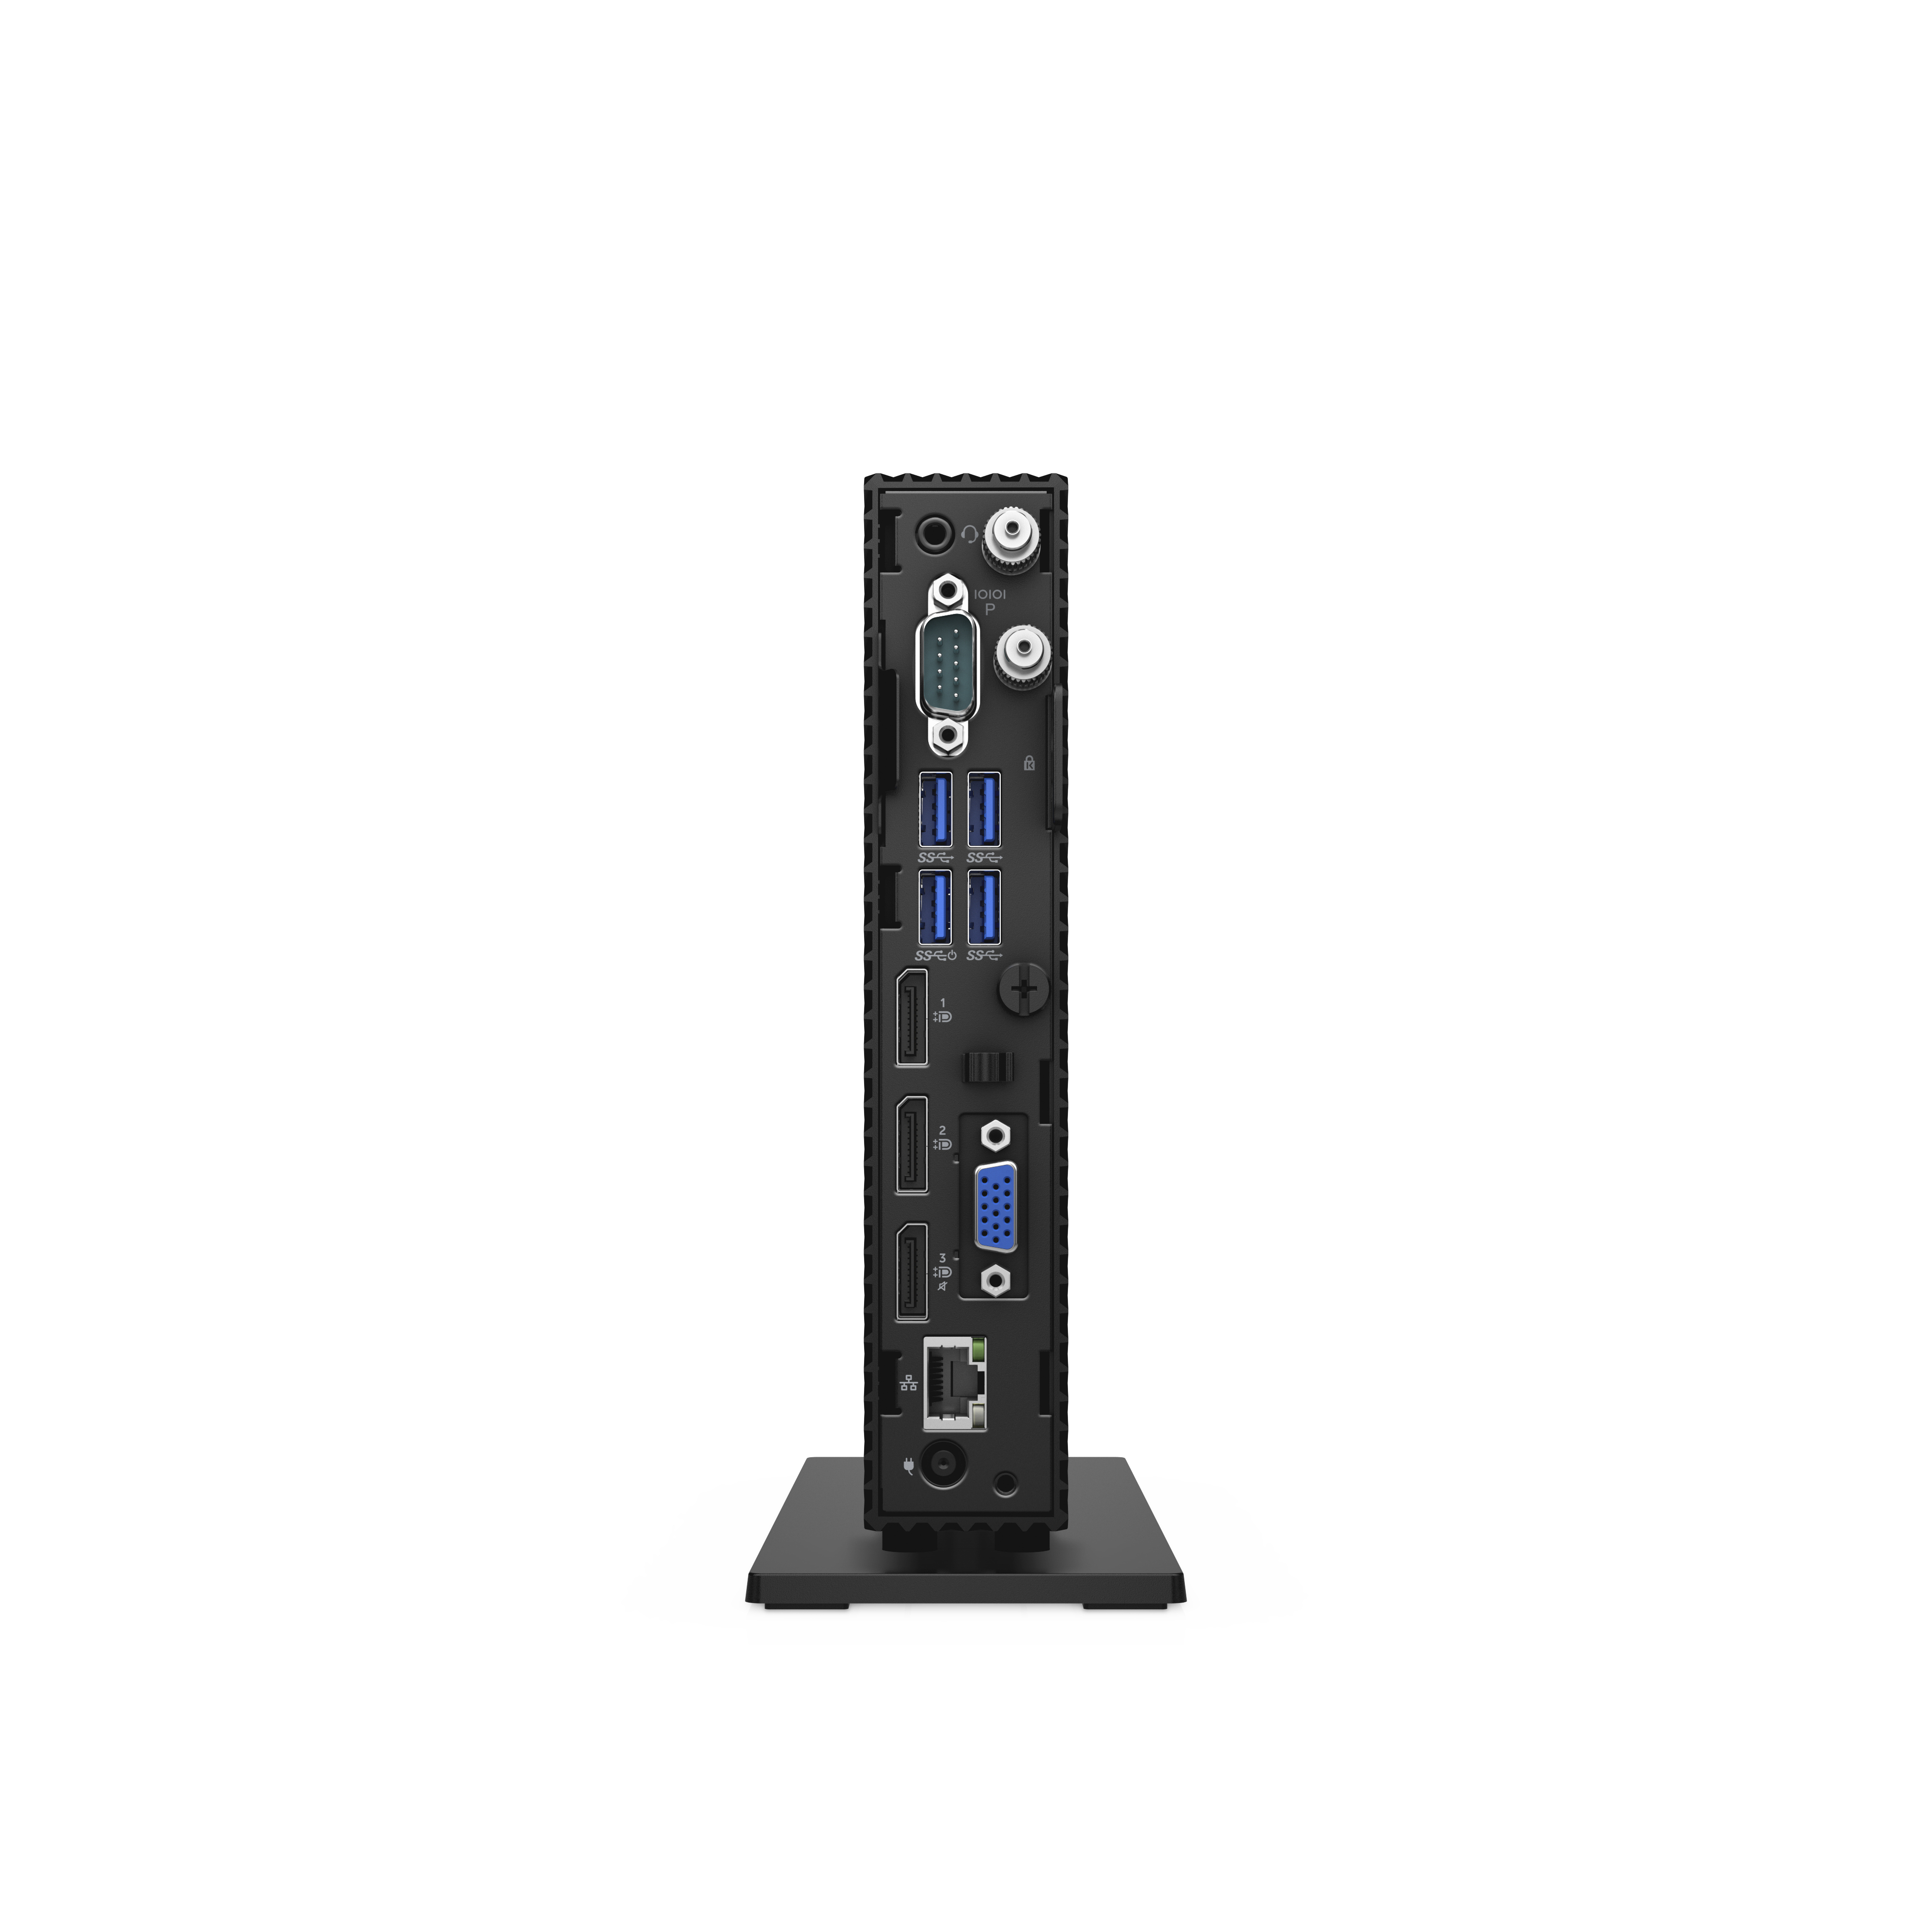 Dell Wyse 5070 1,5 GHz ThinOS 1,13 kg Nero J4105 [G1N2R]